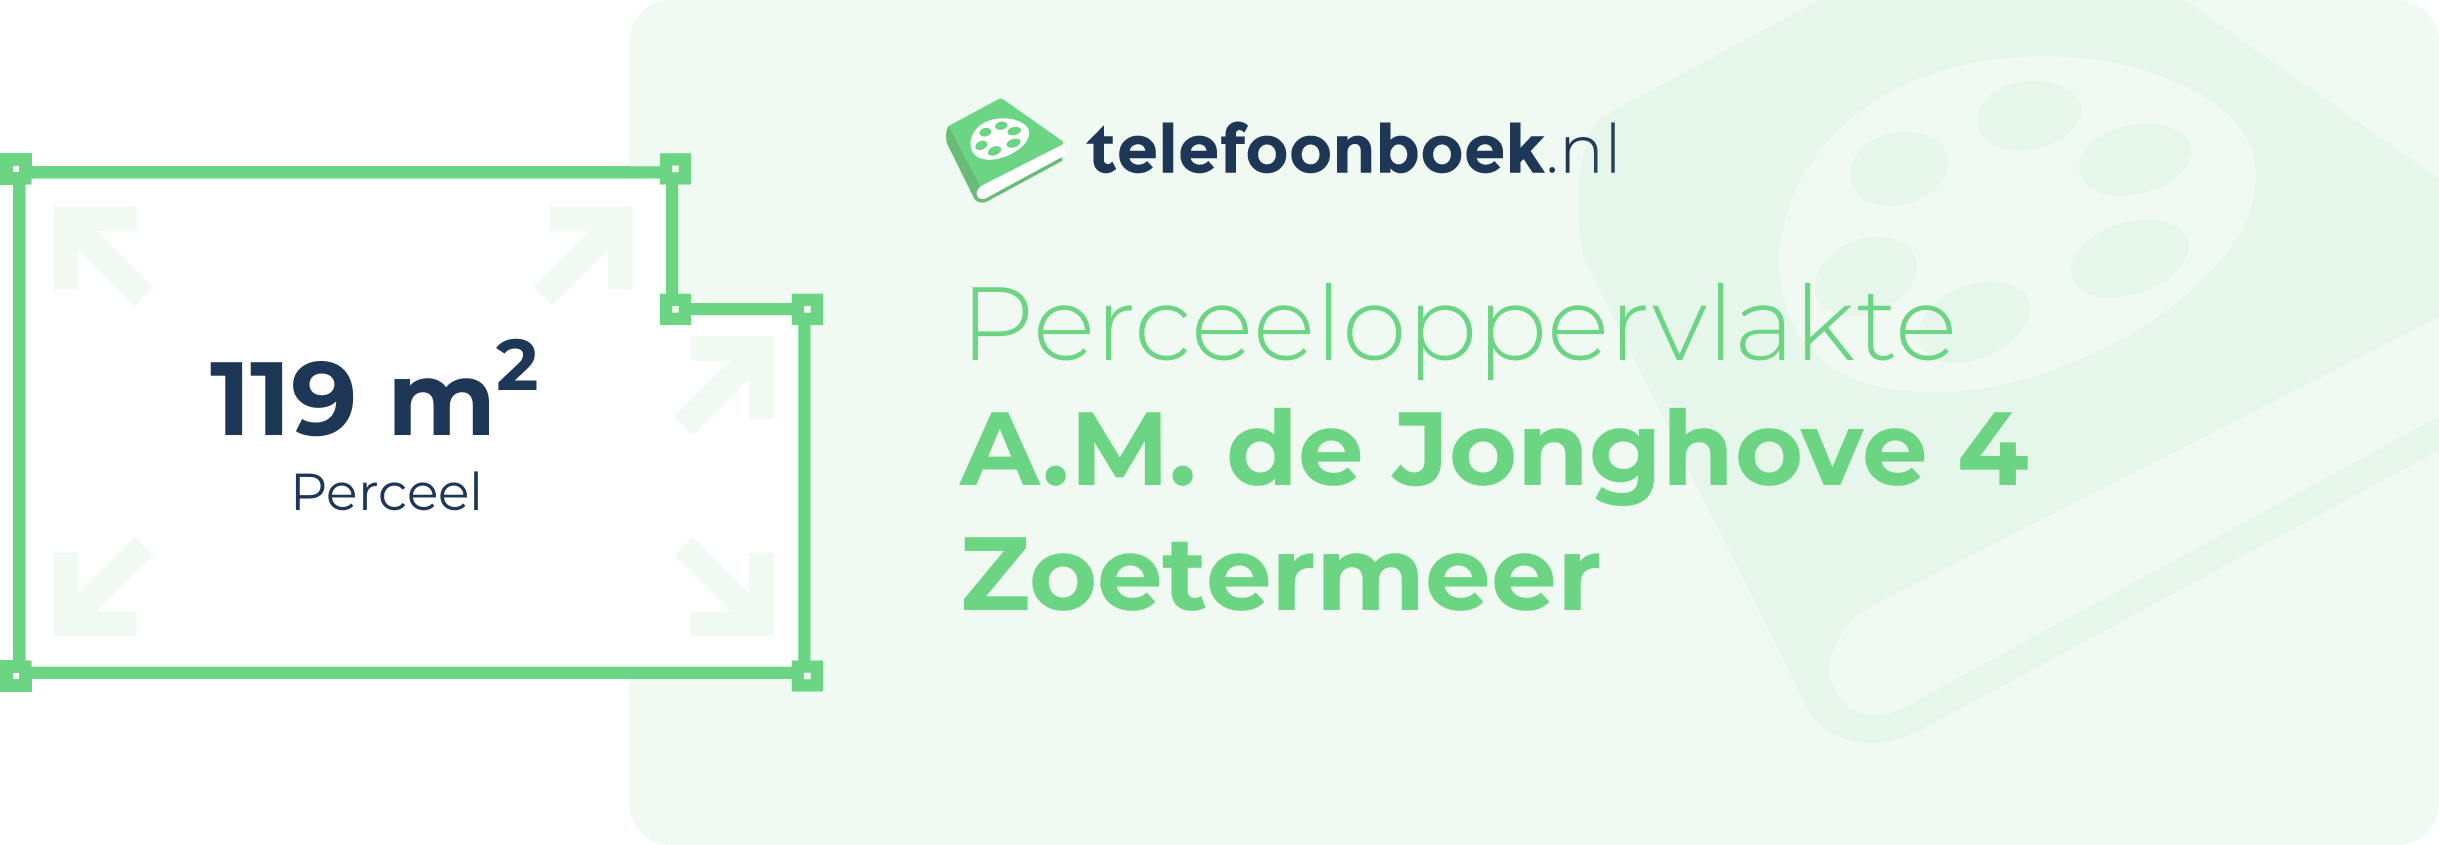 Perceeloppervlakte A.M. De Jonghove 4 Zoetermeer